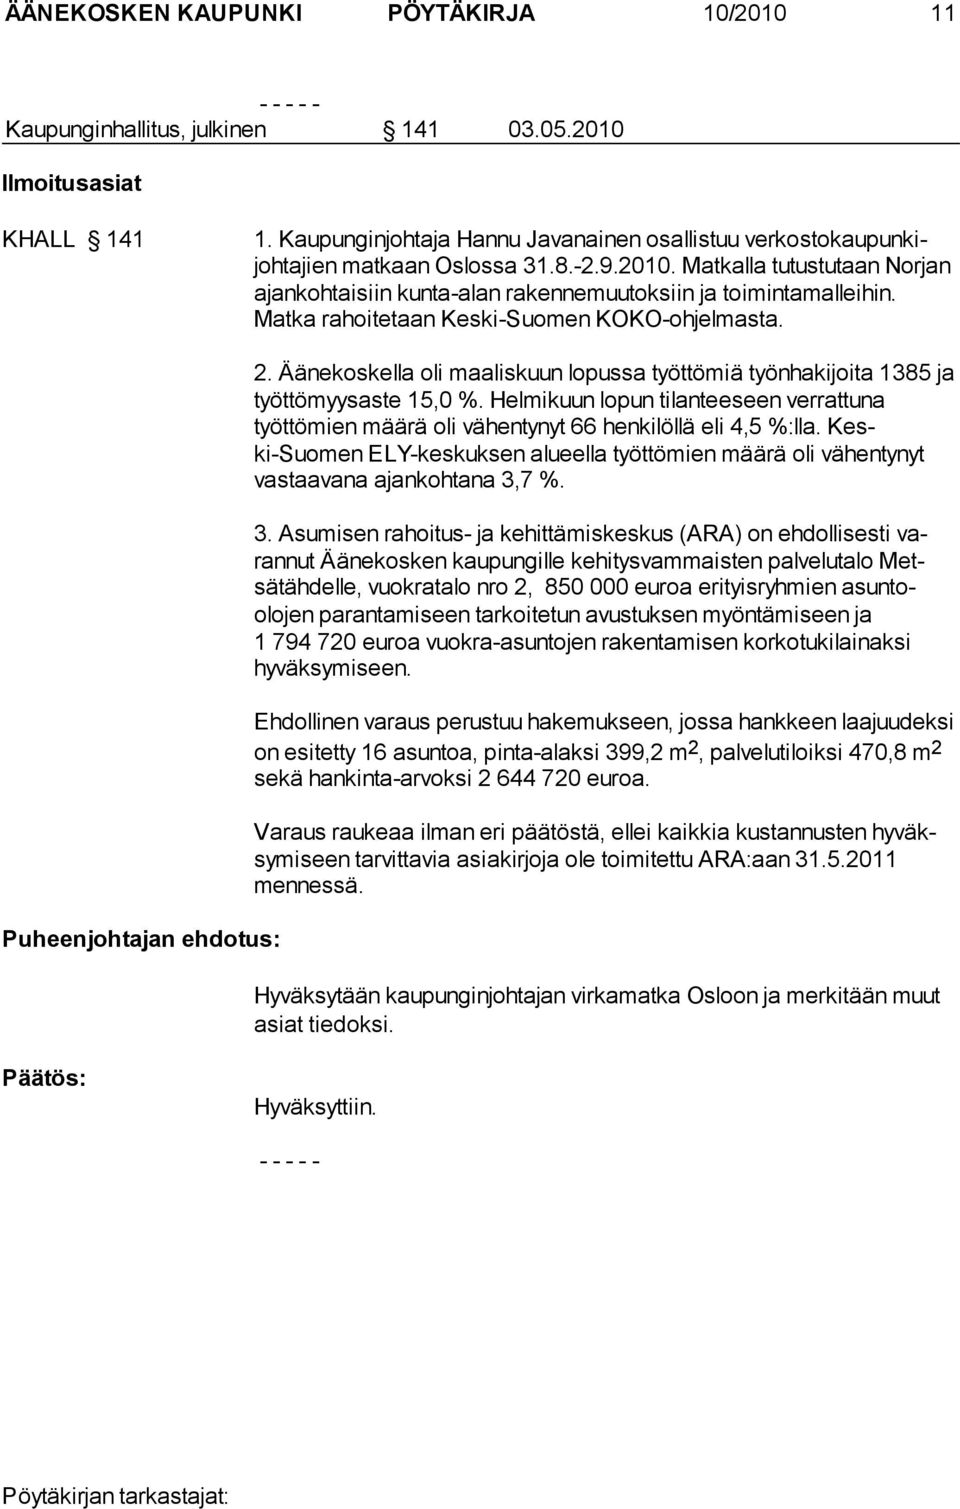 Matka rahoitetaan Keski-Suomen KOKO-ohjelmasta. Puheenjohtajan ehdotus: 2. Äänekoskella oli maaliskuun lopussa työttömiä työnhakijoita 1385 ja työttömyysaste 15,0 %.